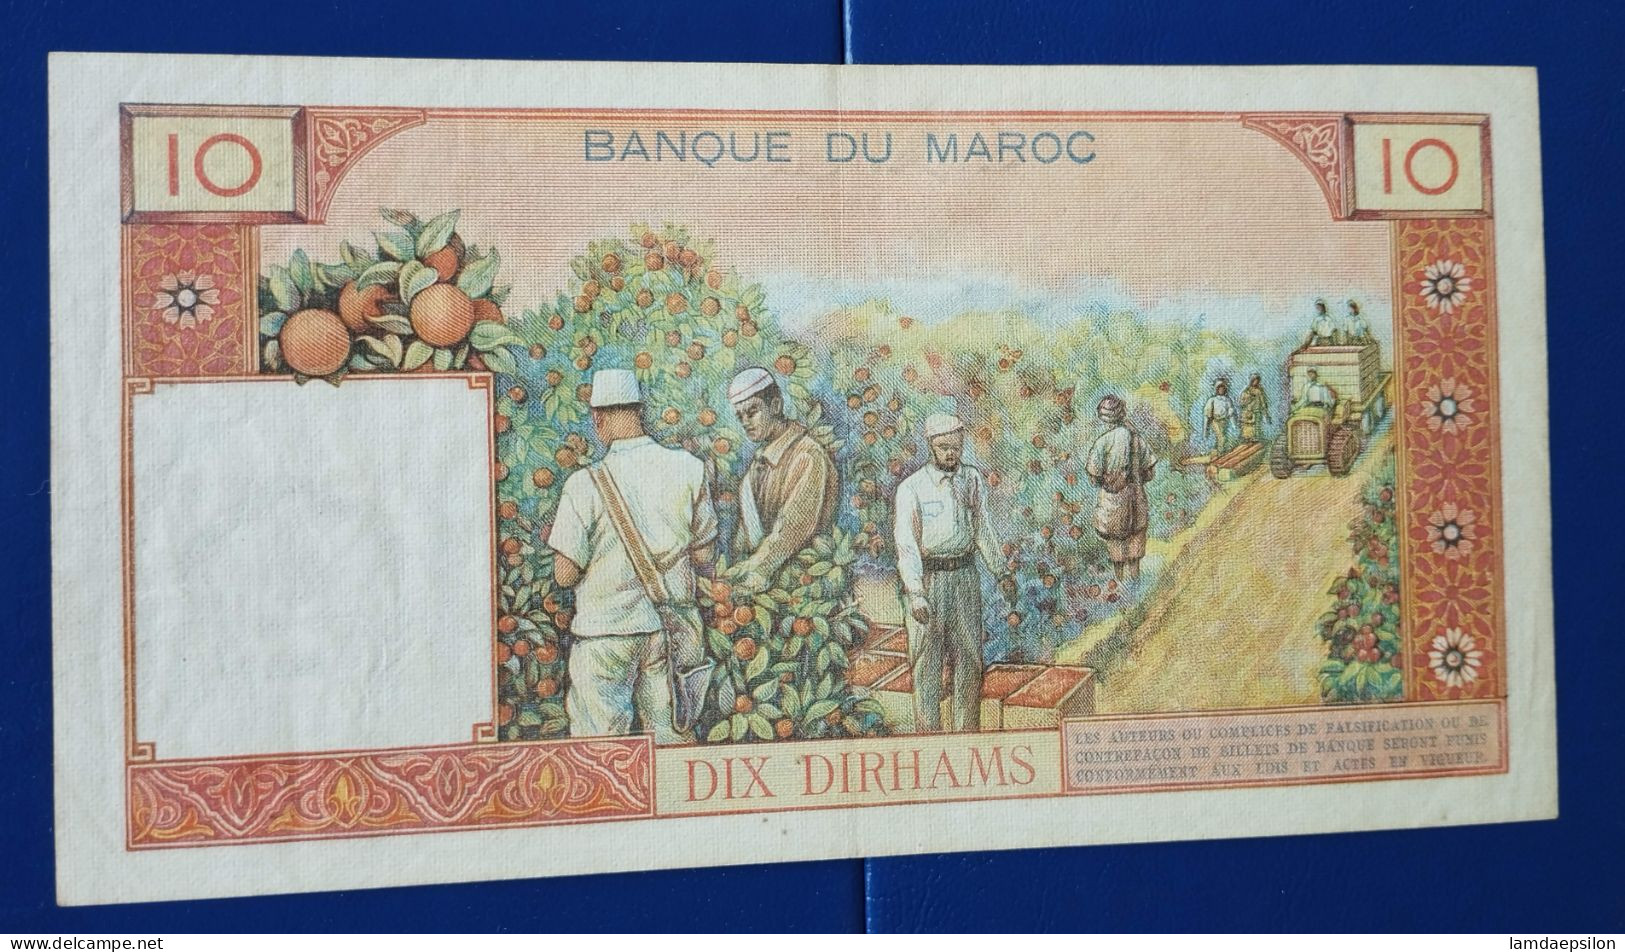 MAROC MOROCCO MARRUECOS MAROKKO BANQUE DU MAROC  10 DIRHAMS 1965 - Marokko